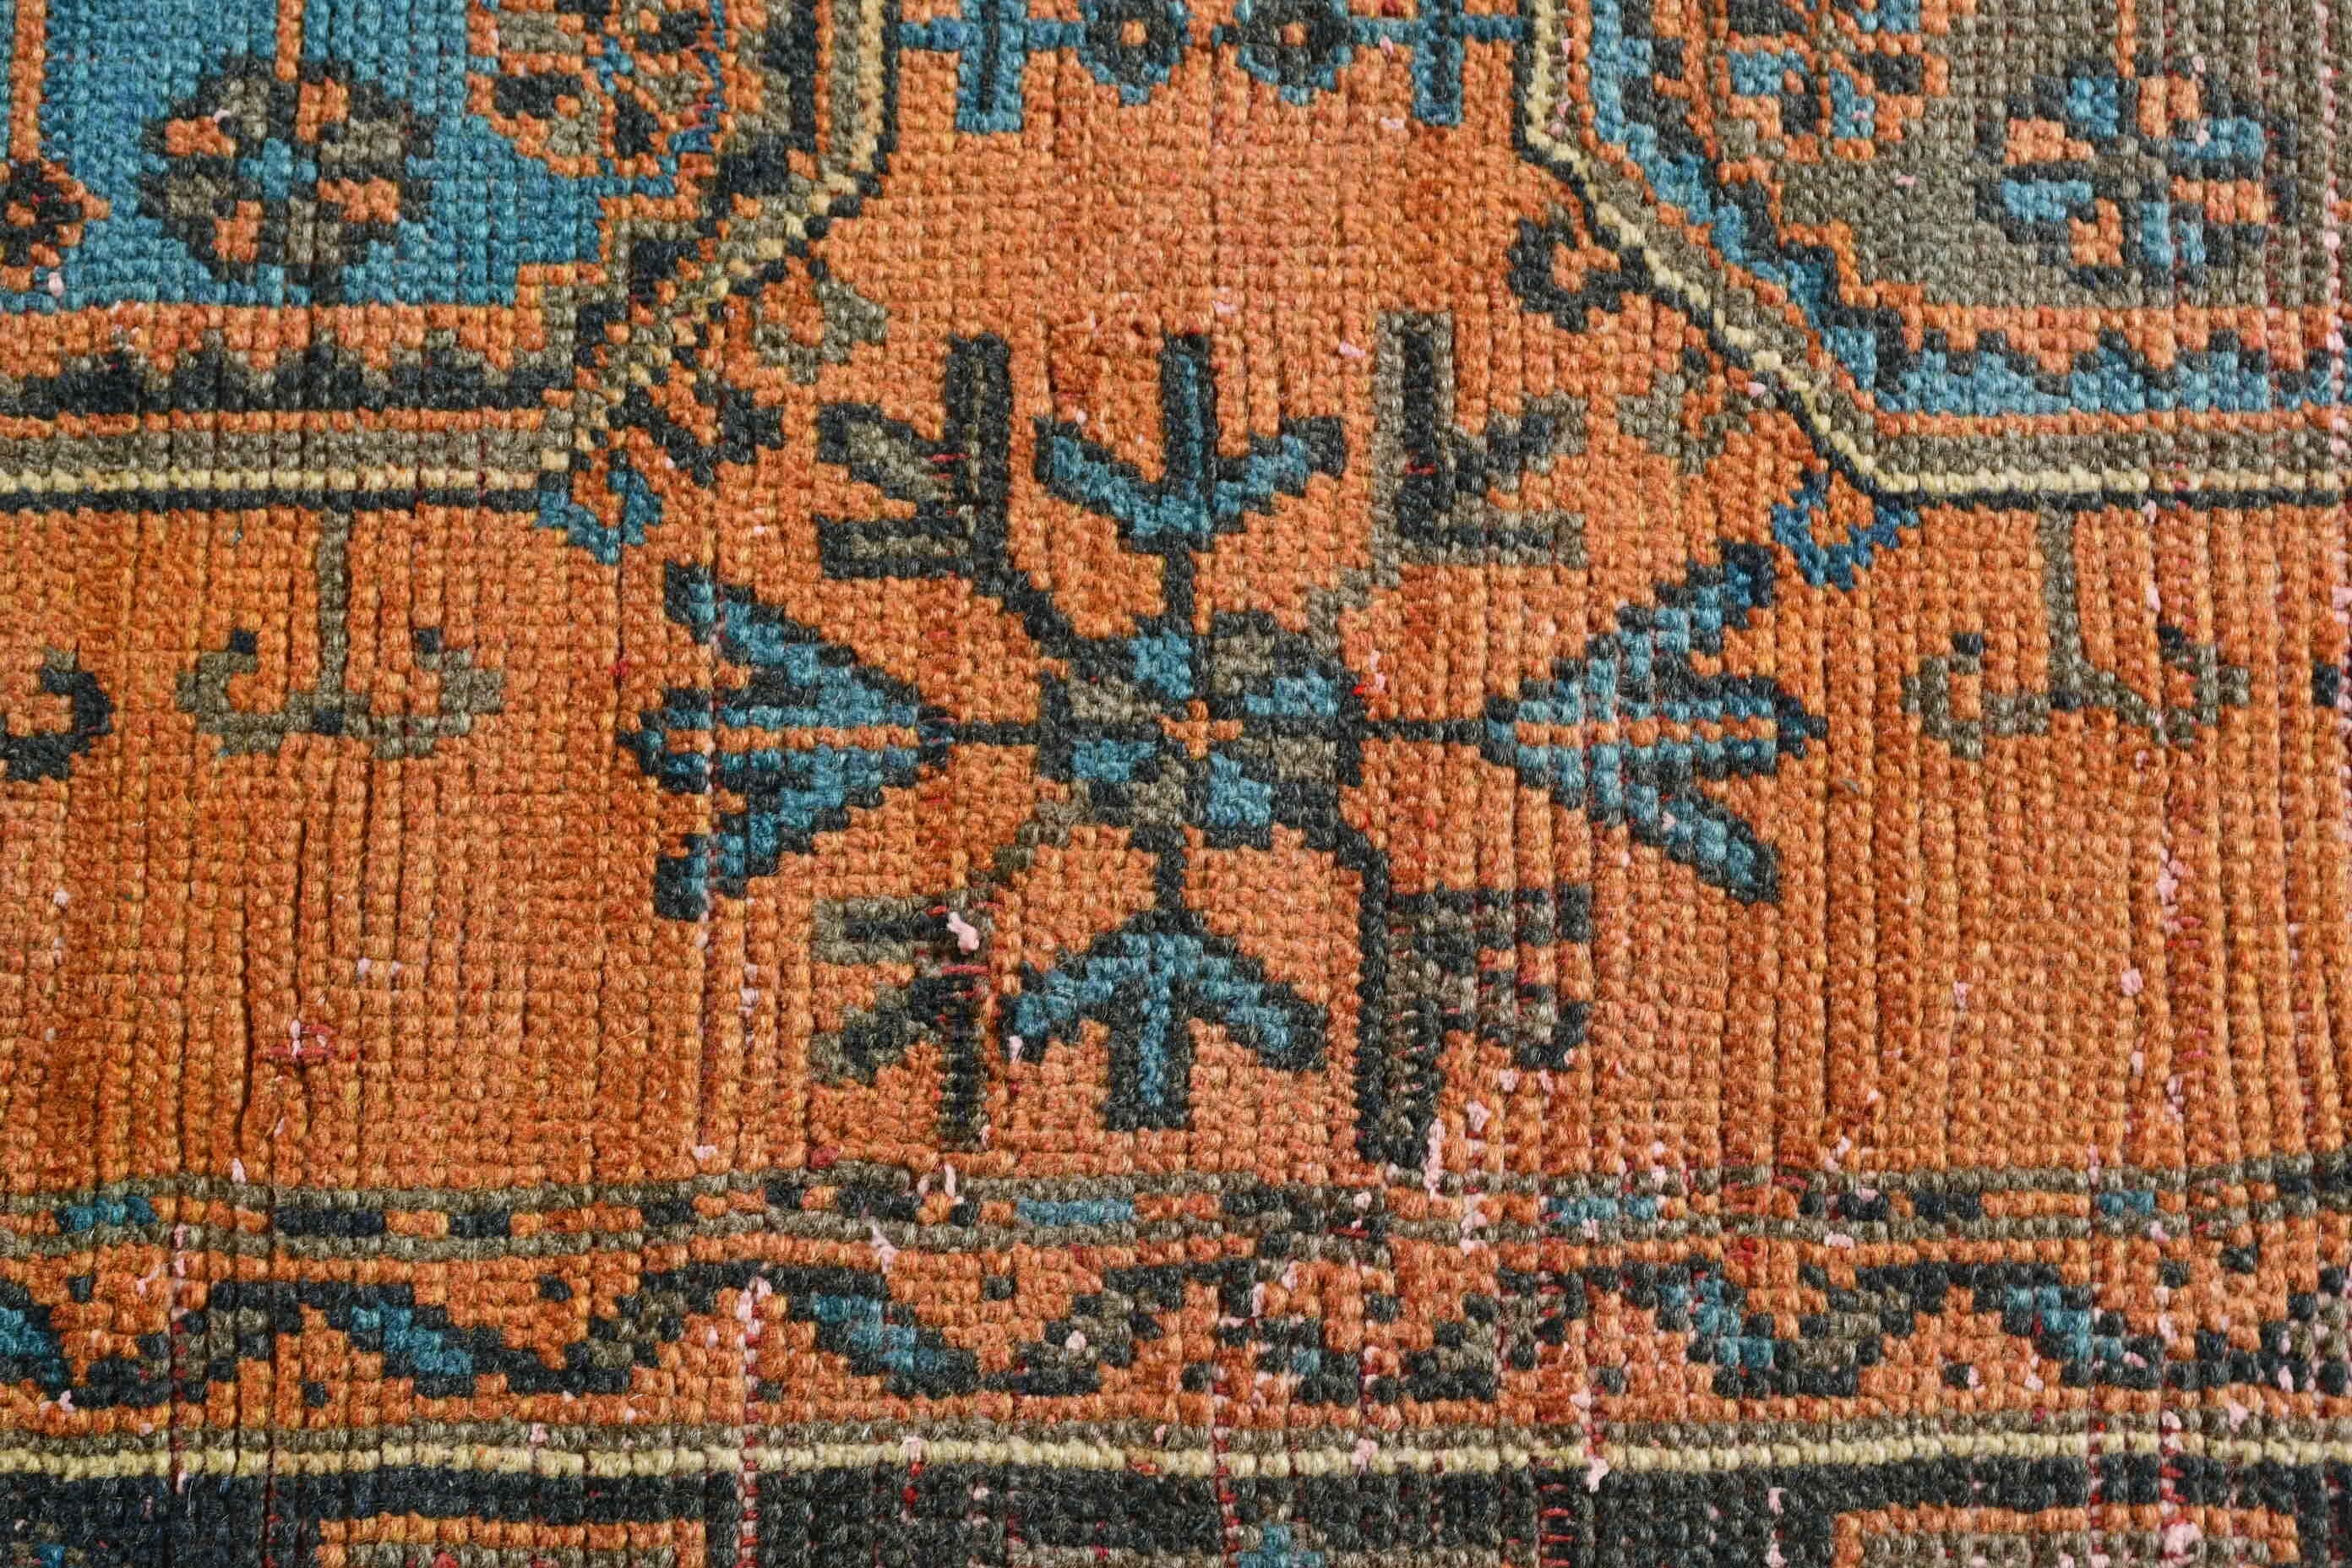 Orange Oriental Rug, Cool Rug, Turkish Rug, Bedroom Rug, Rugs for Bedroom, Pale Rug, Living Room Rug, Vintage Rugs, 4.5x10.7 ft Large Rug